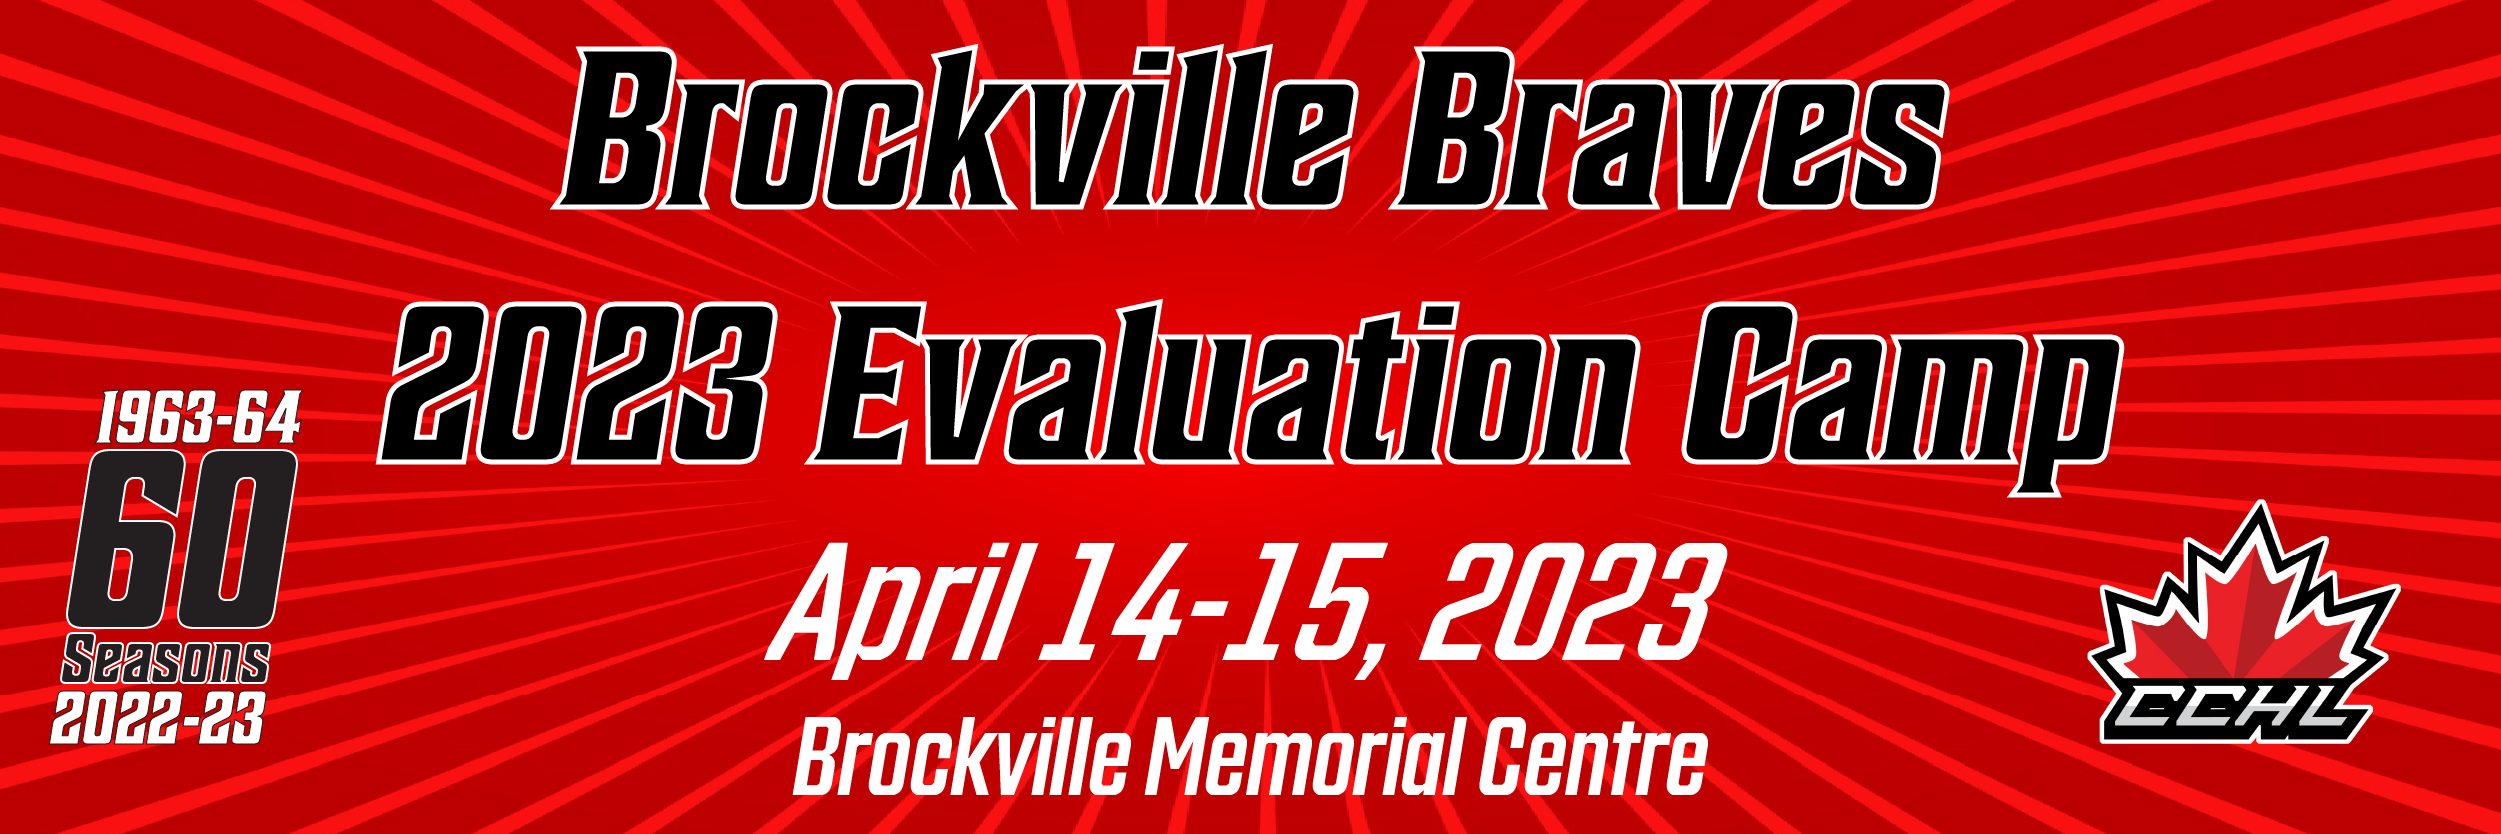 2023 Evaluation Camp - Brockville Braves April 14-15, 2023 - Brockville Memorial Centre